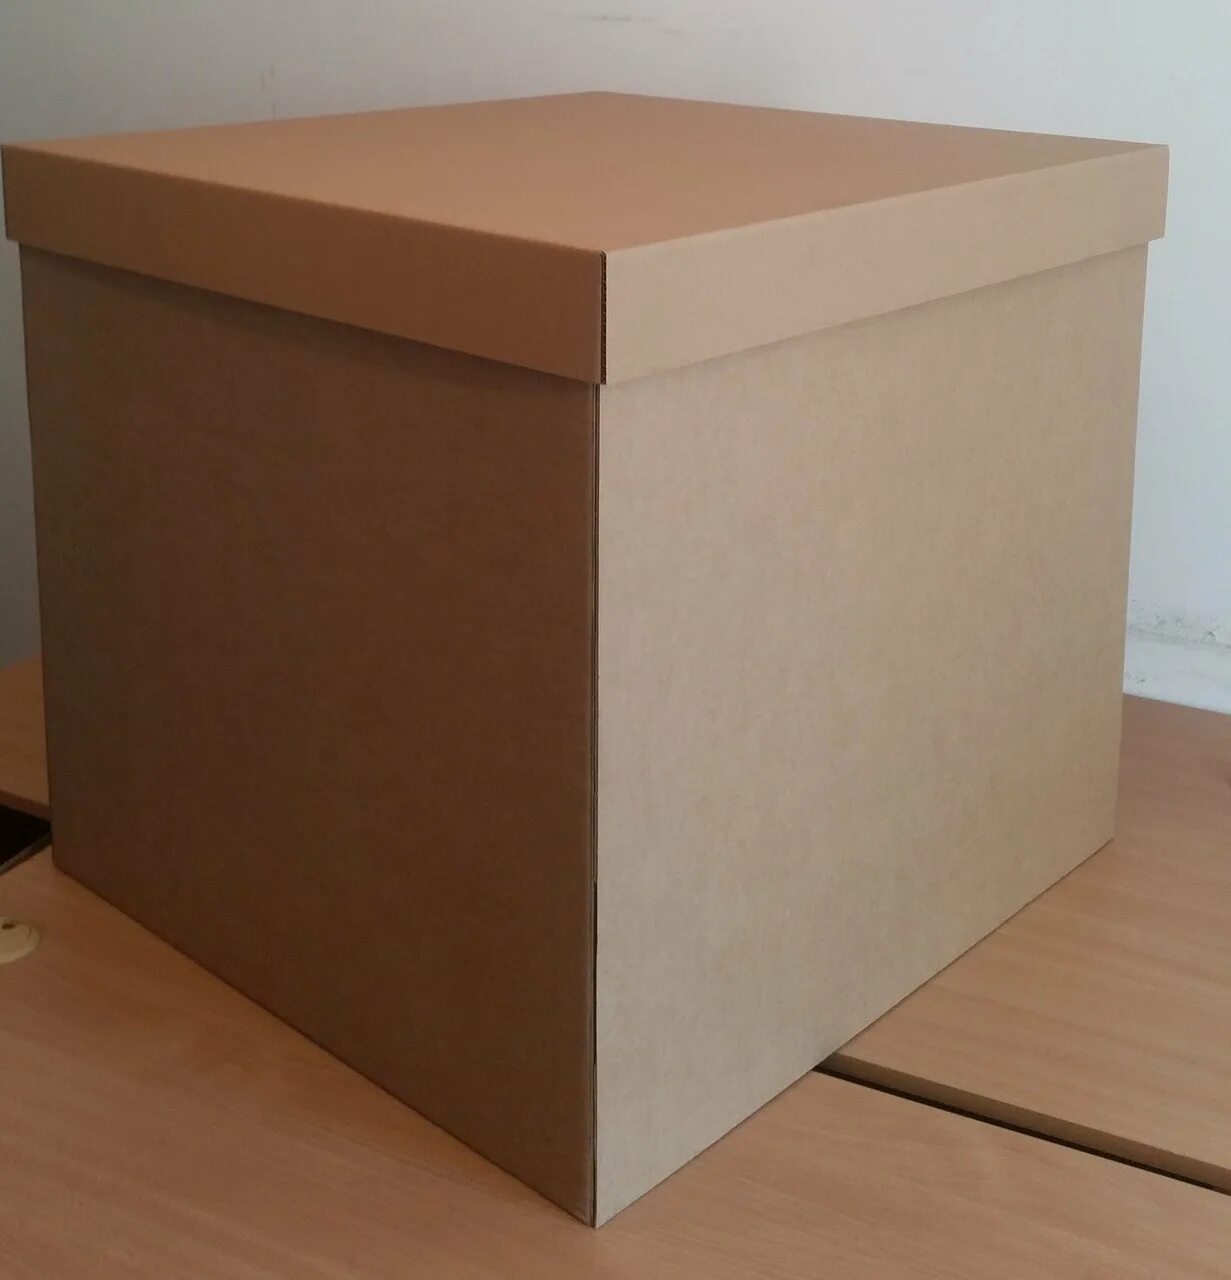 Коробка высотой 1 метр